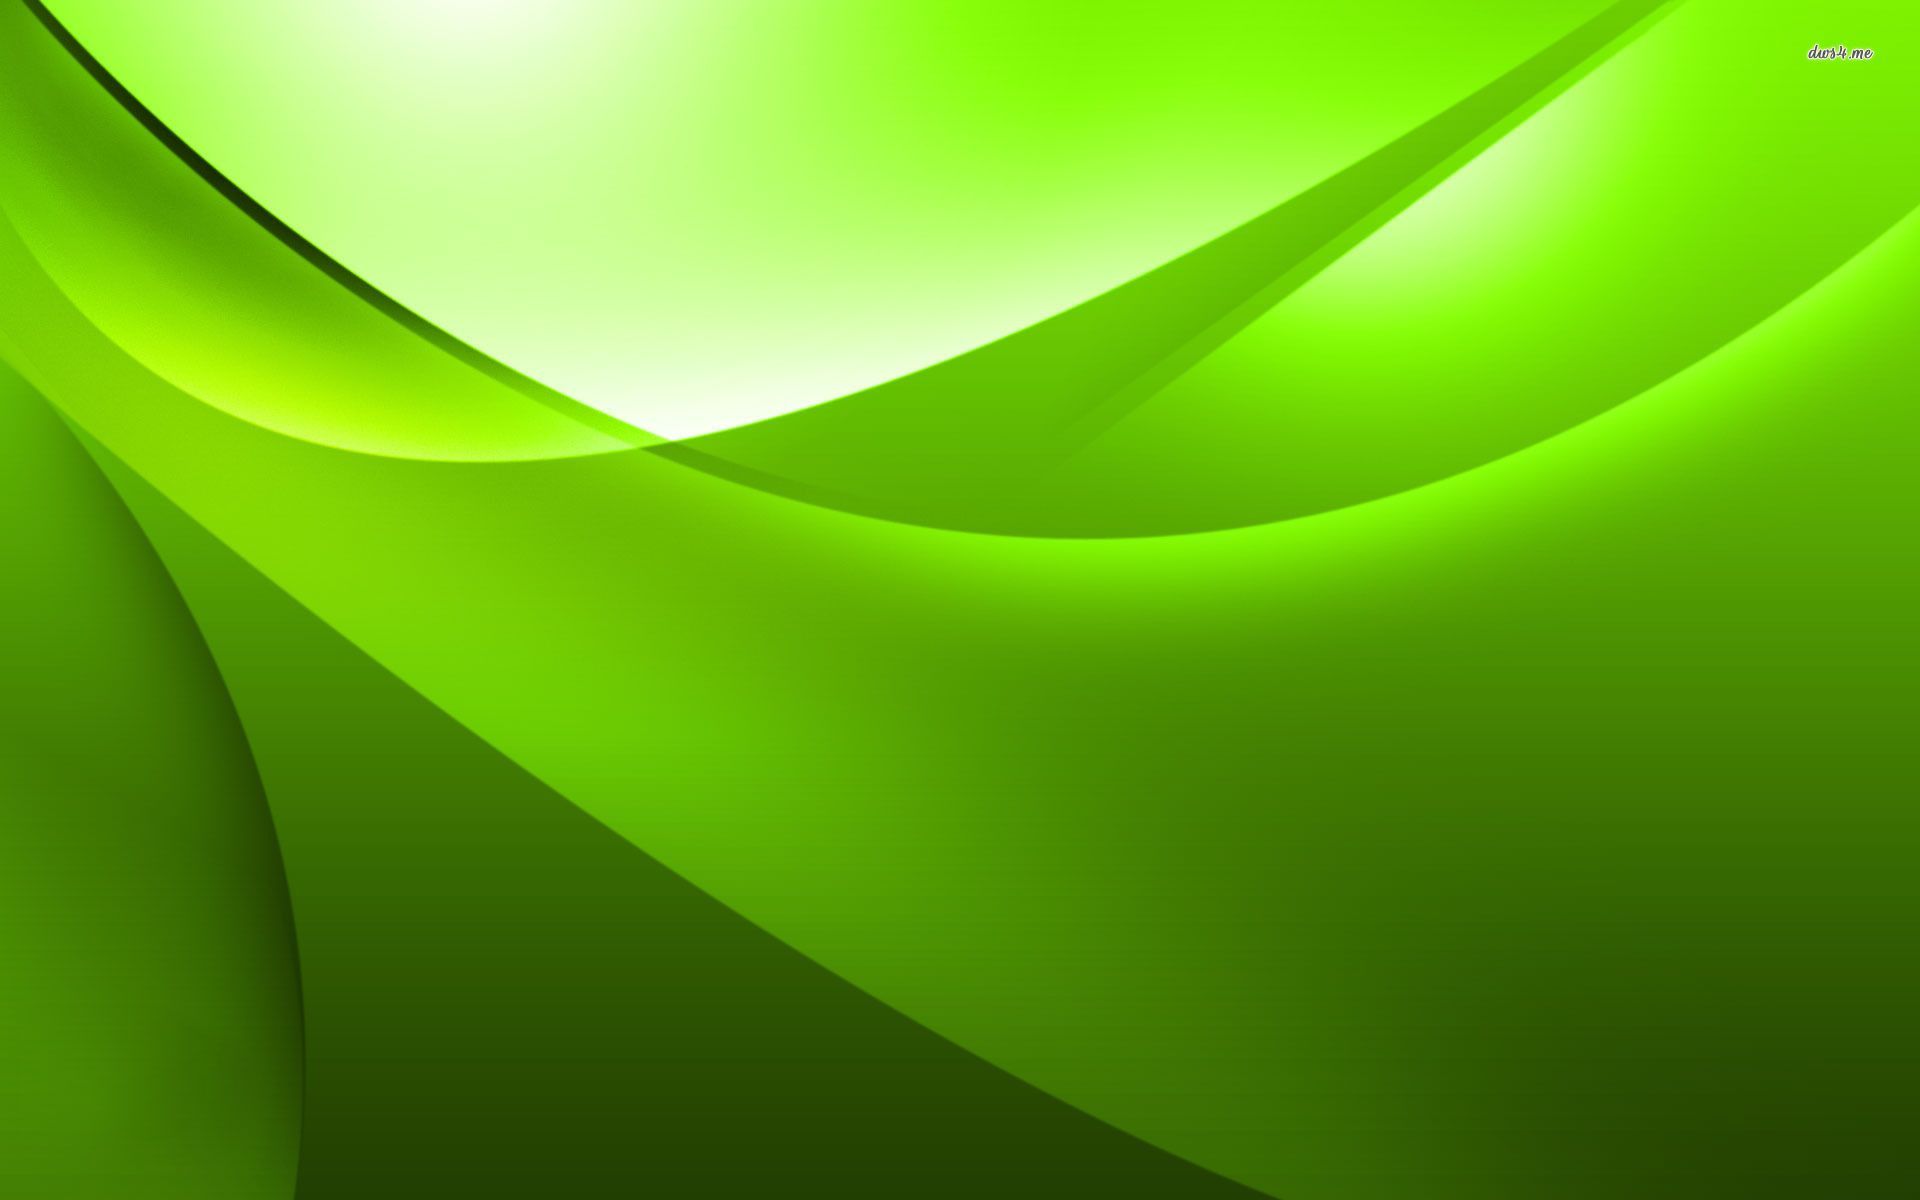 Bạn đang tìm kiếm một hình nền xanh lá cây để thêm sự tươi mới cho máy tính của mình? Hãy ghé qua WallpaperDog, nơi cập nhật nhiều hình nền đẹp mắt cho bạn thoải mái chọn lựa. Hãy cùng thưởng thức không gian lá xanh mát mẻ cho màn hình của mình!